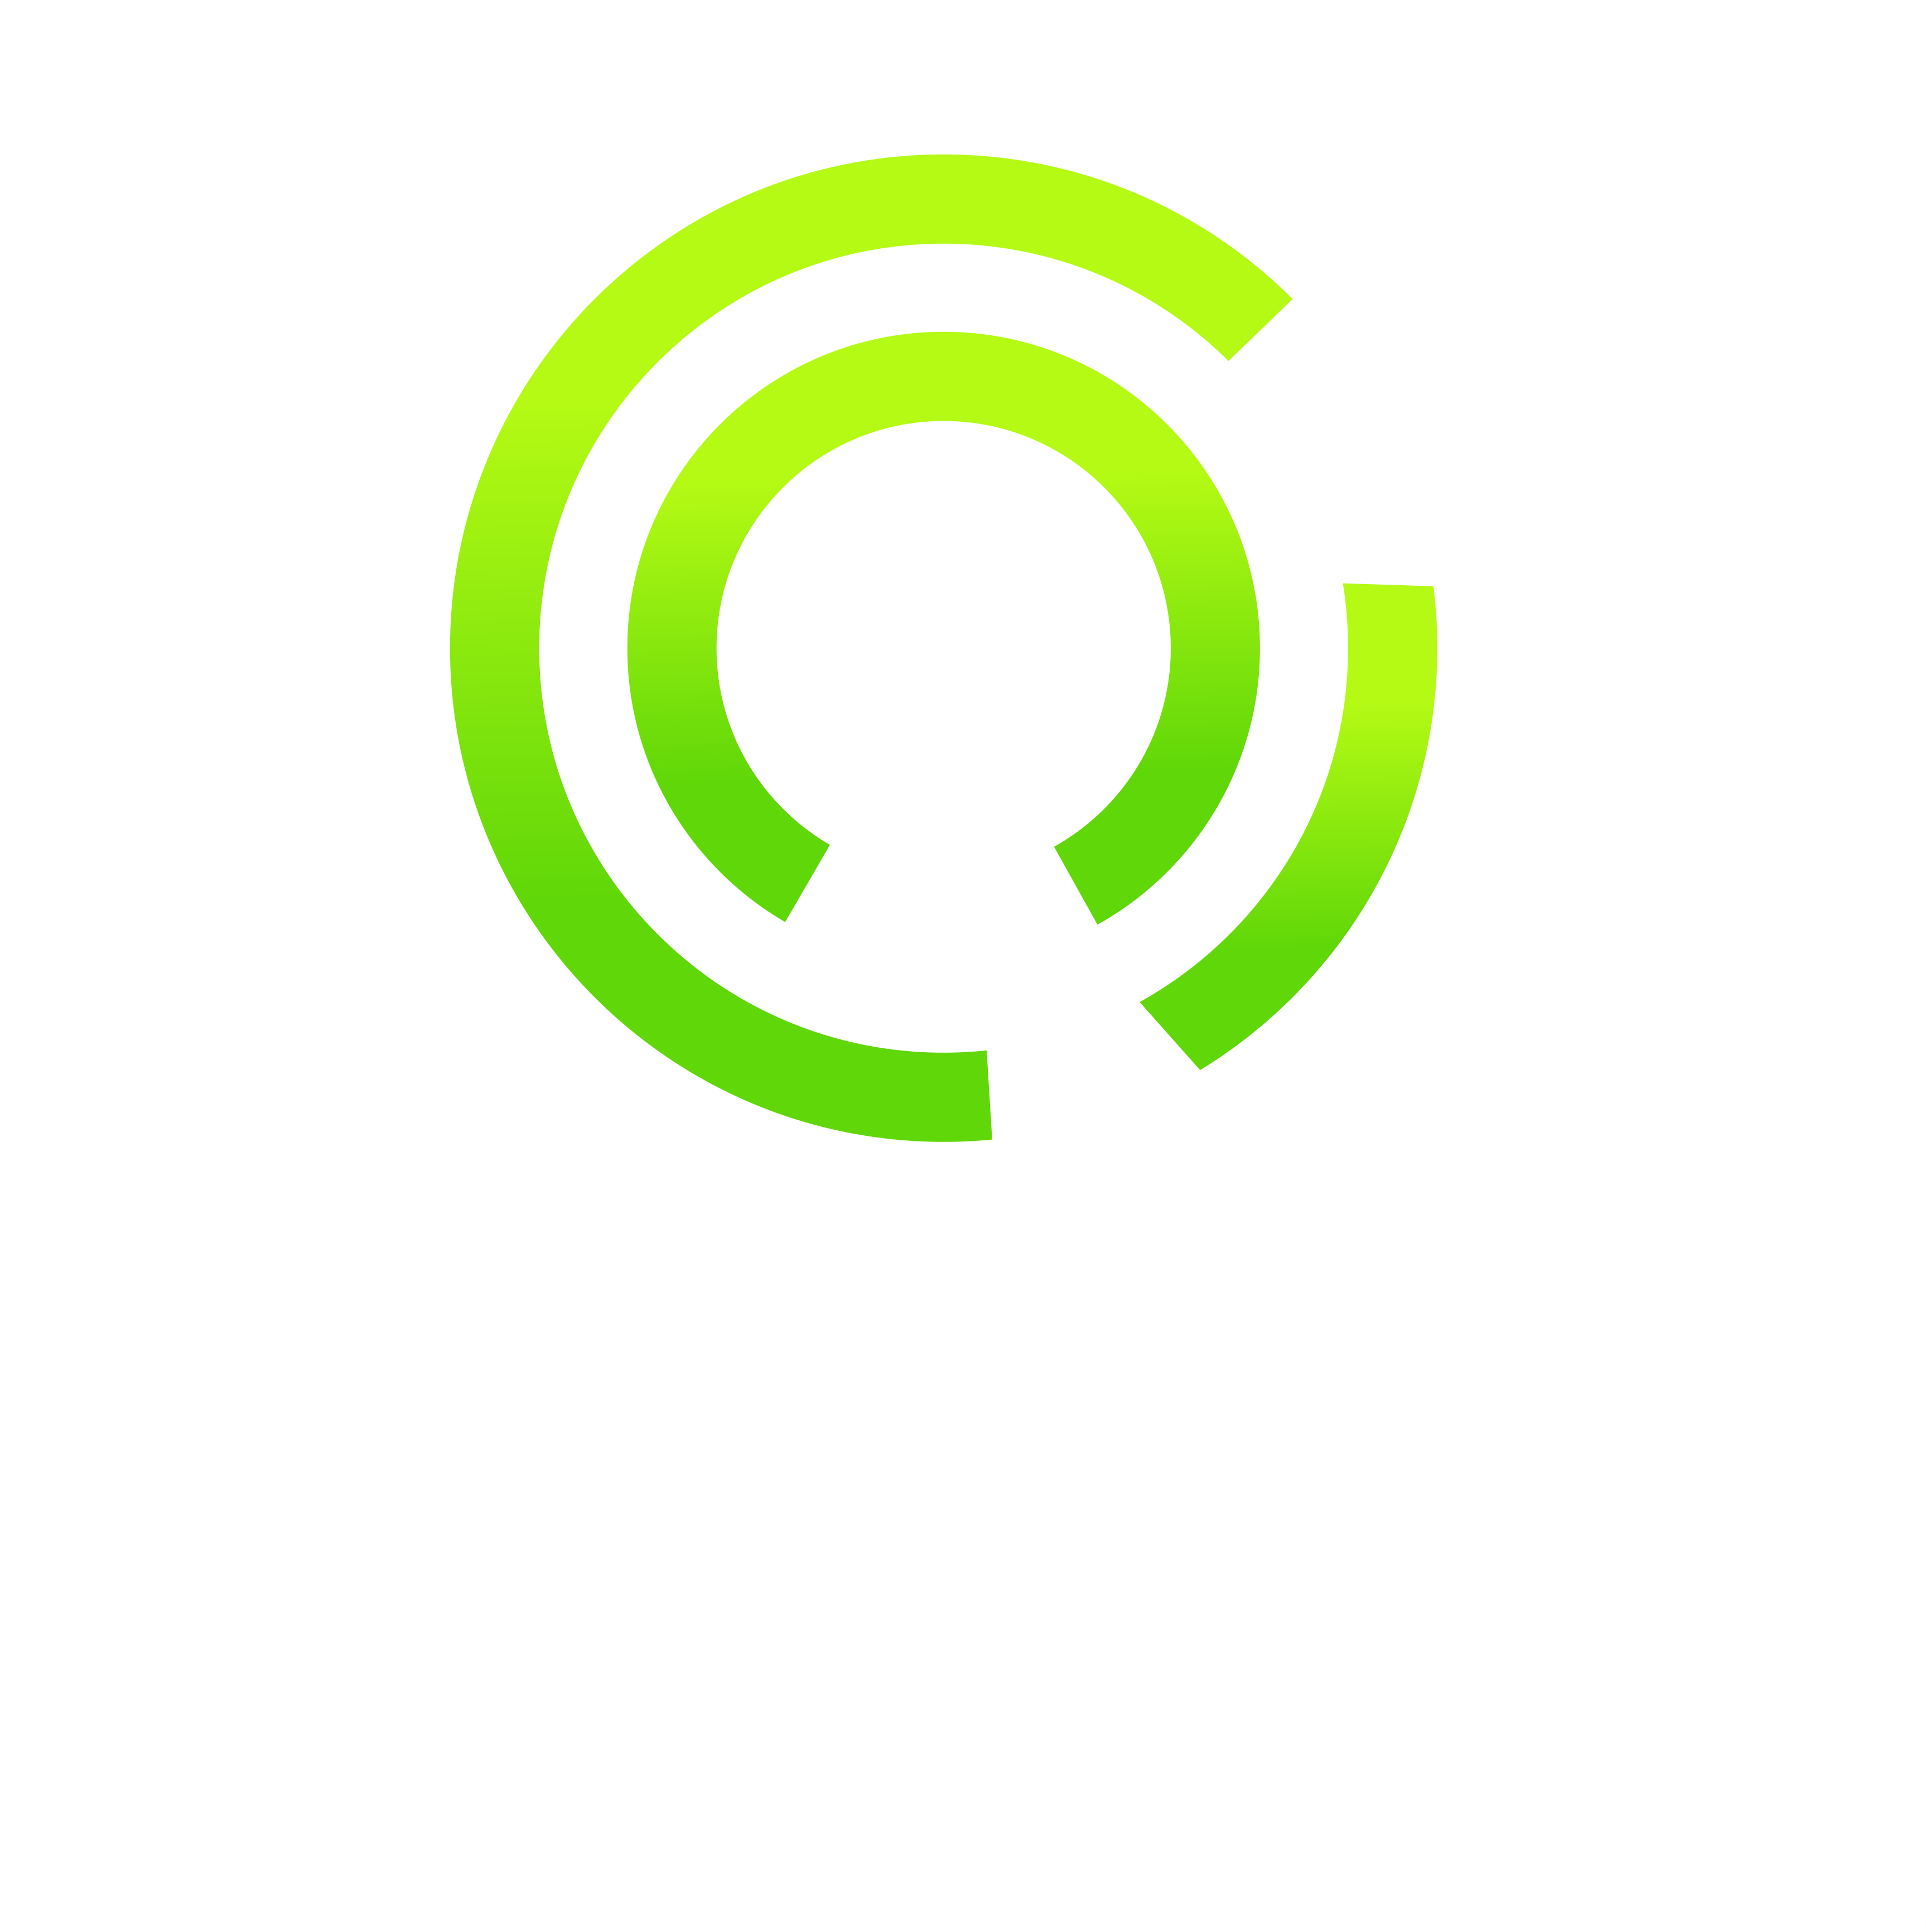 Image Advertising Web Design